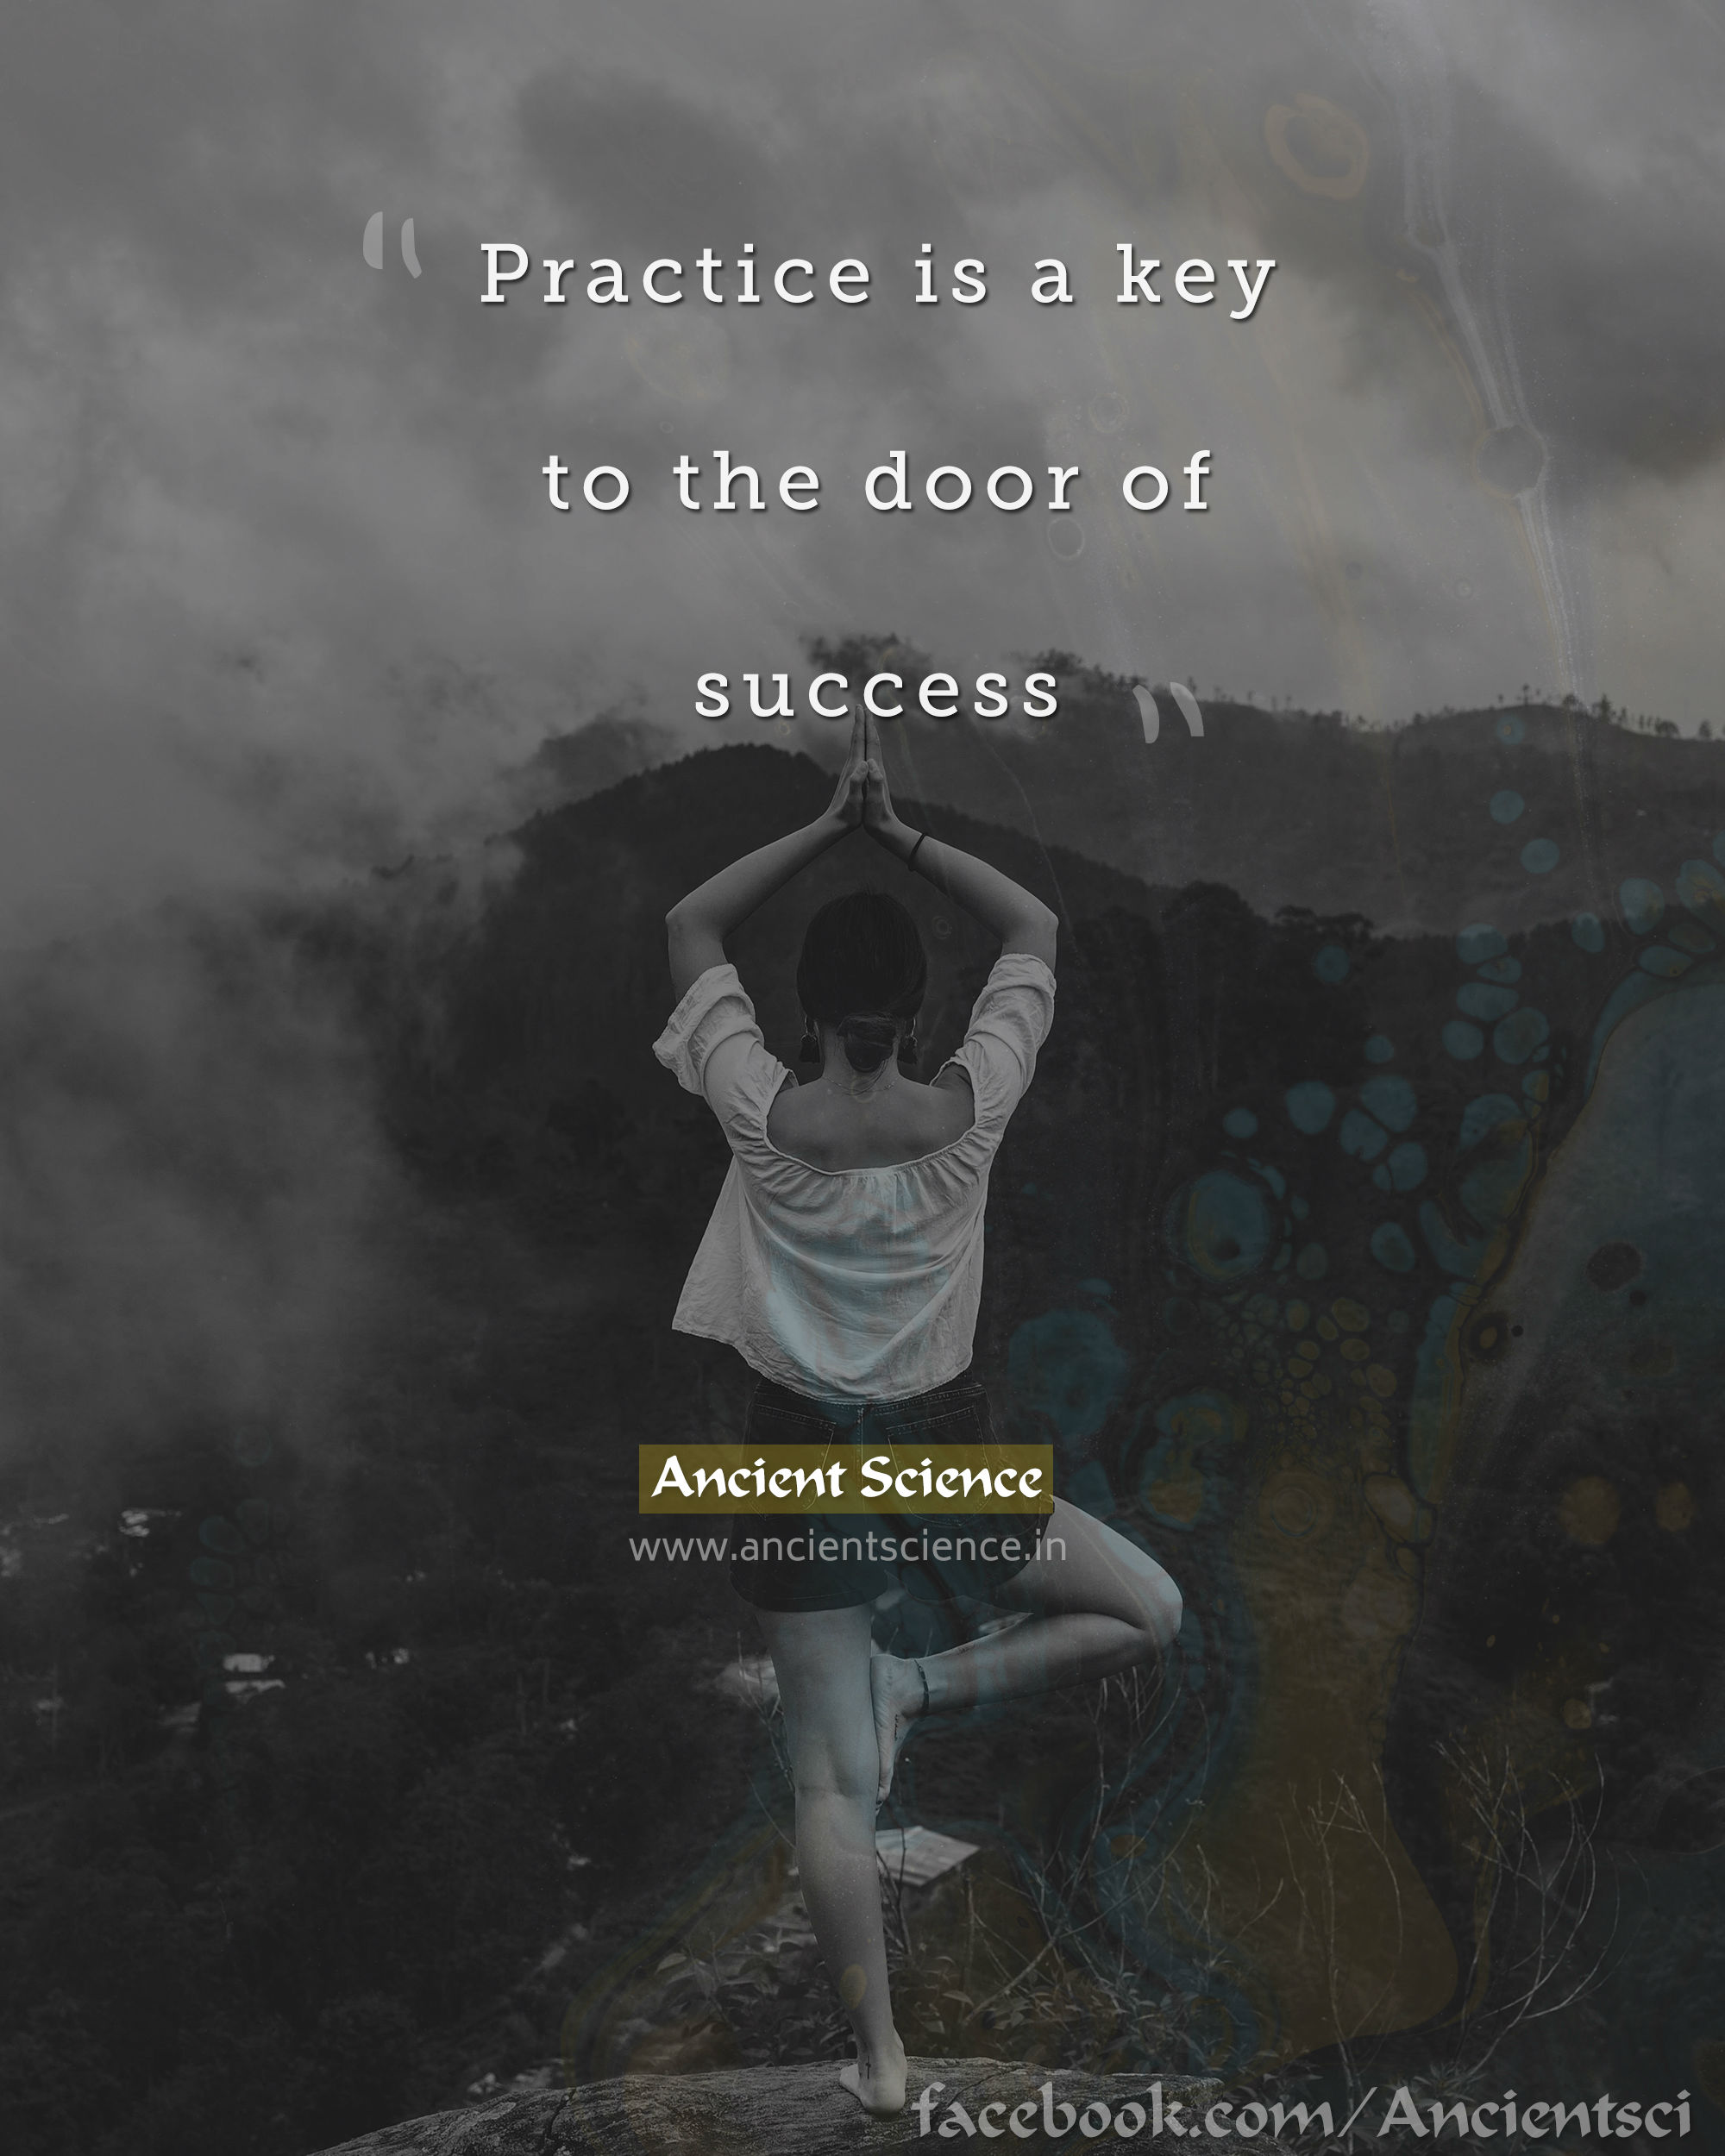 Practice is a key to the door of success